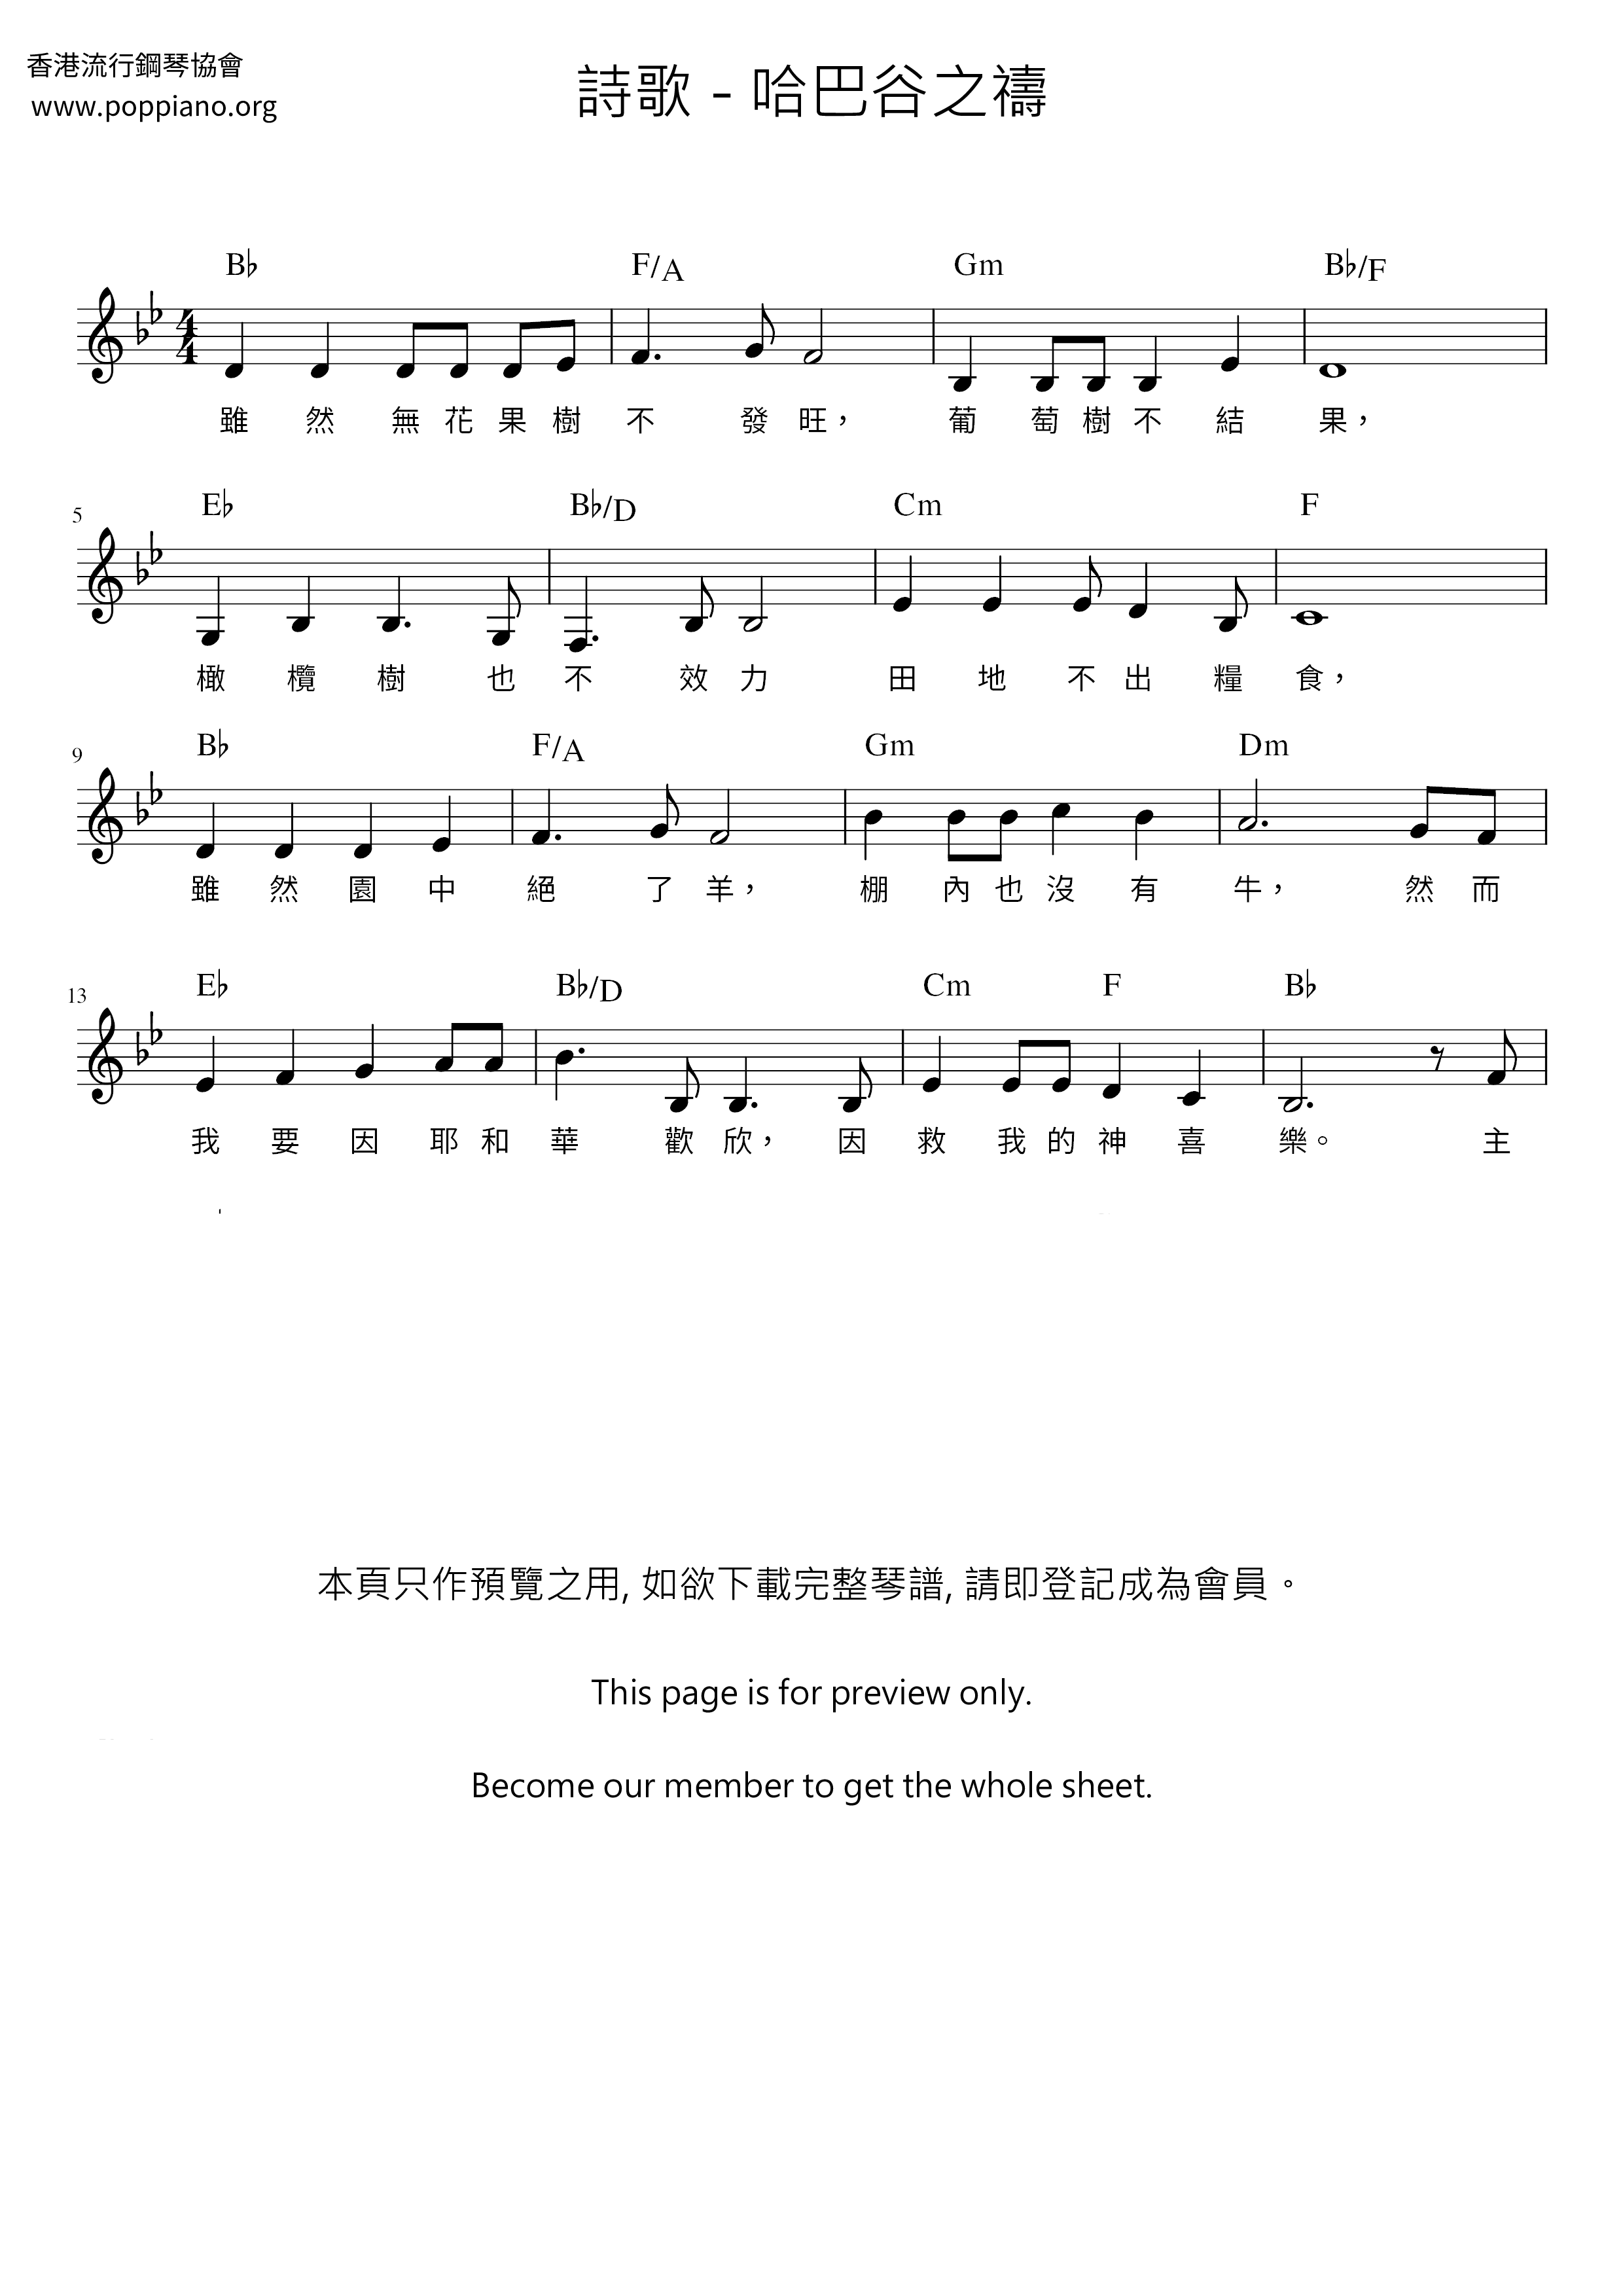 Prayer Of Habakkuk Score